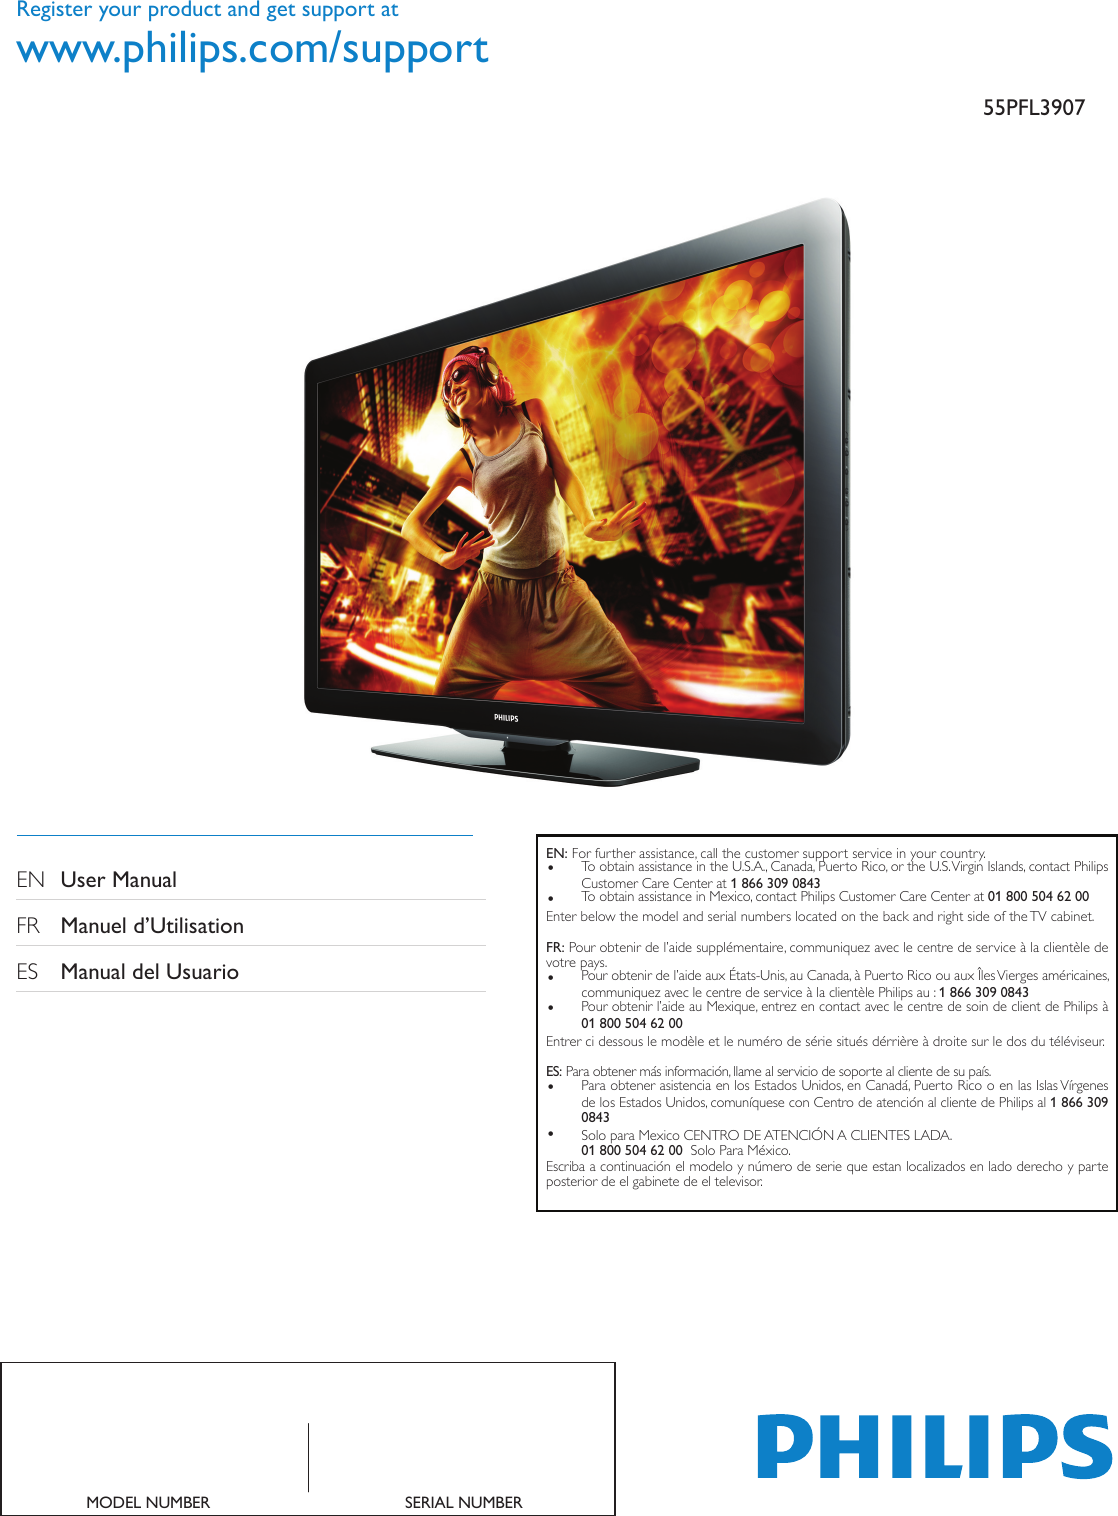 Convertidor VGA A HDMI, Ref: CV-VGAHDMI Señal de Video TV, MONITOR EXPANDIR  SEÑAL